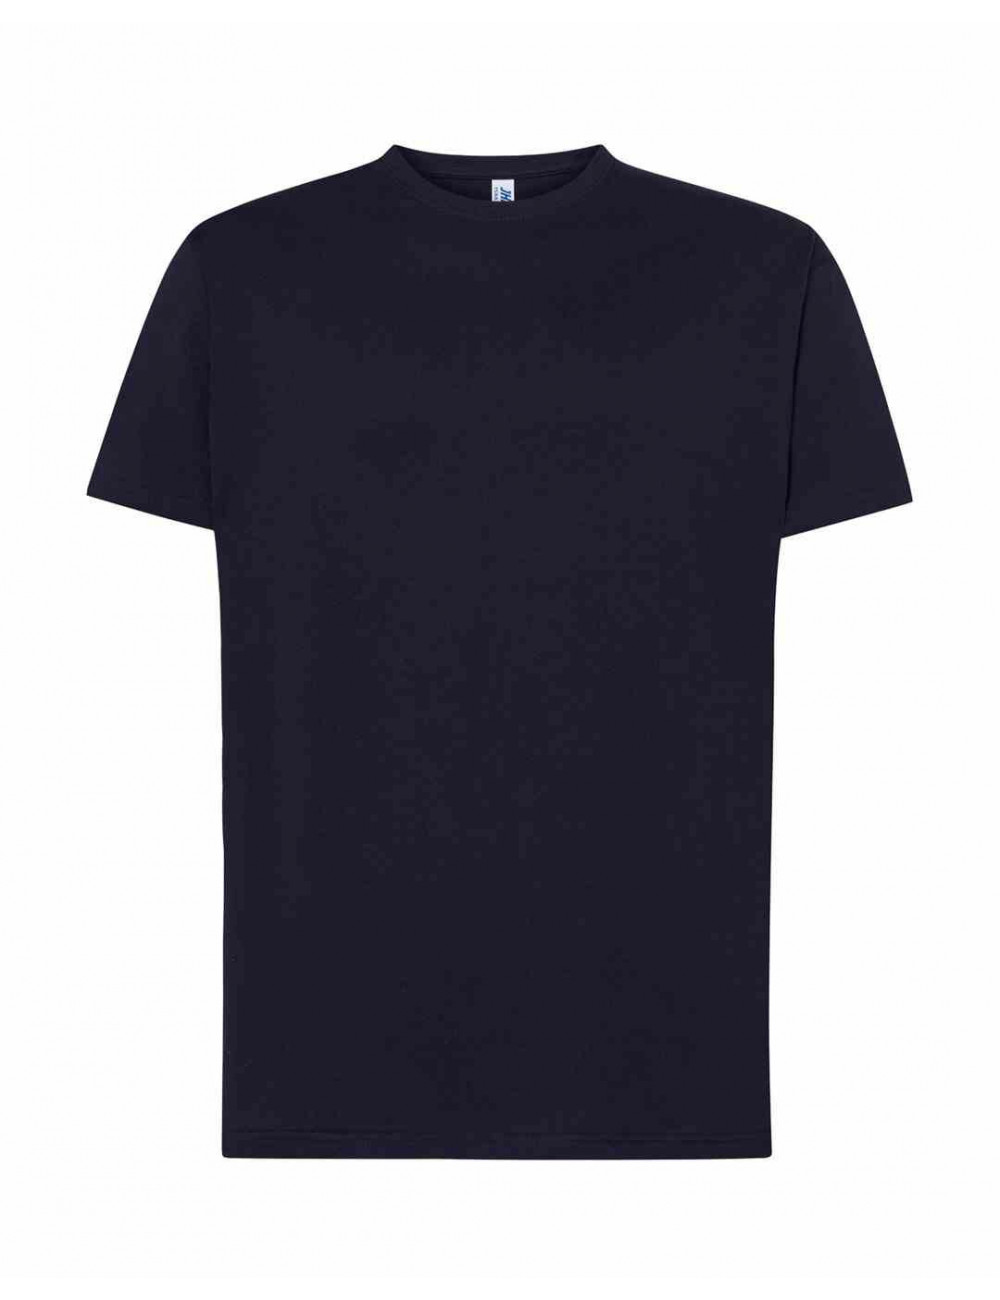 Koszulka męska tsra 150 regular t-shirt ny - navy Jhk